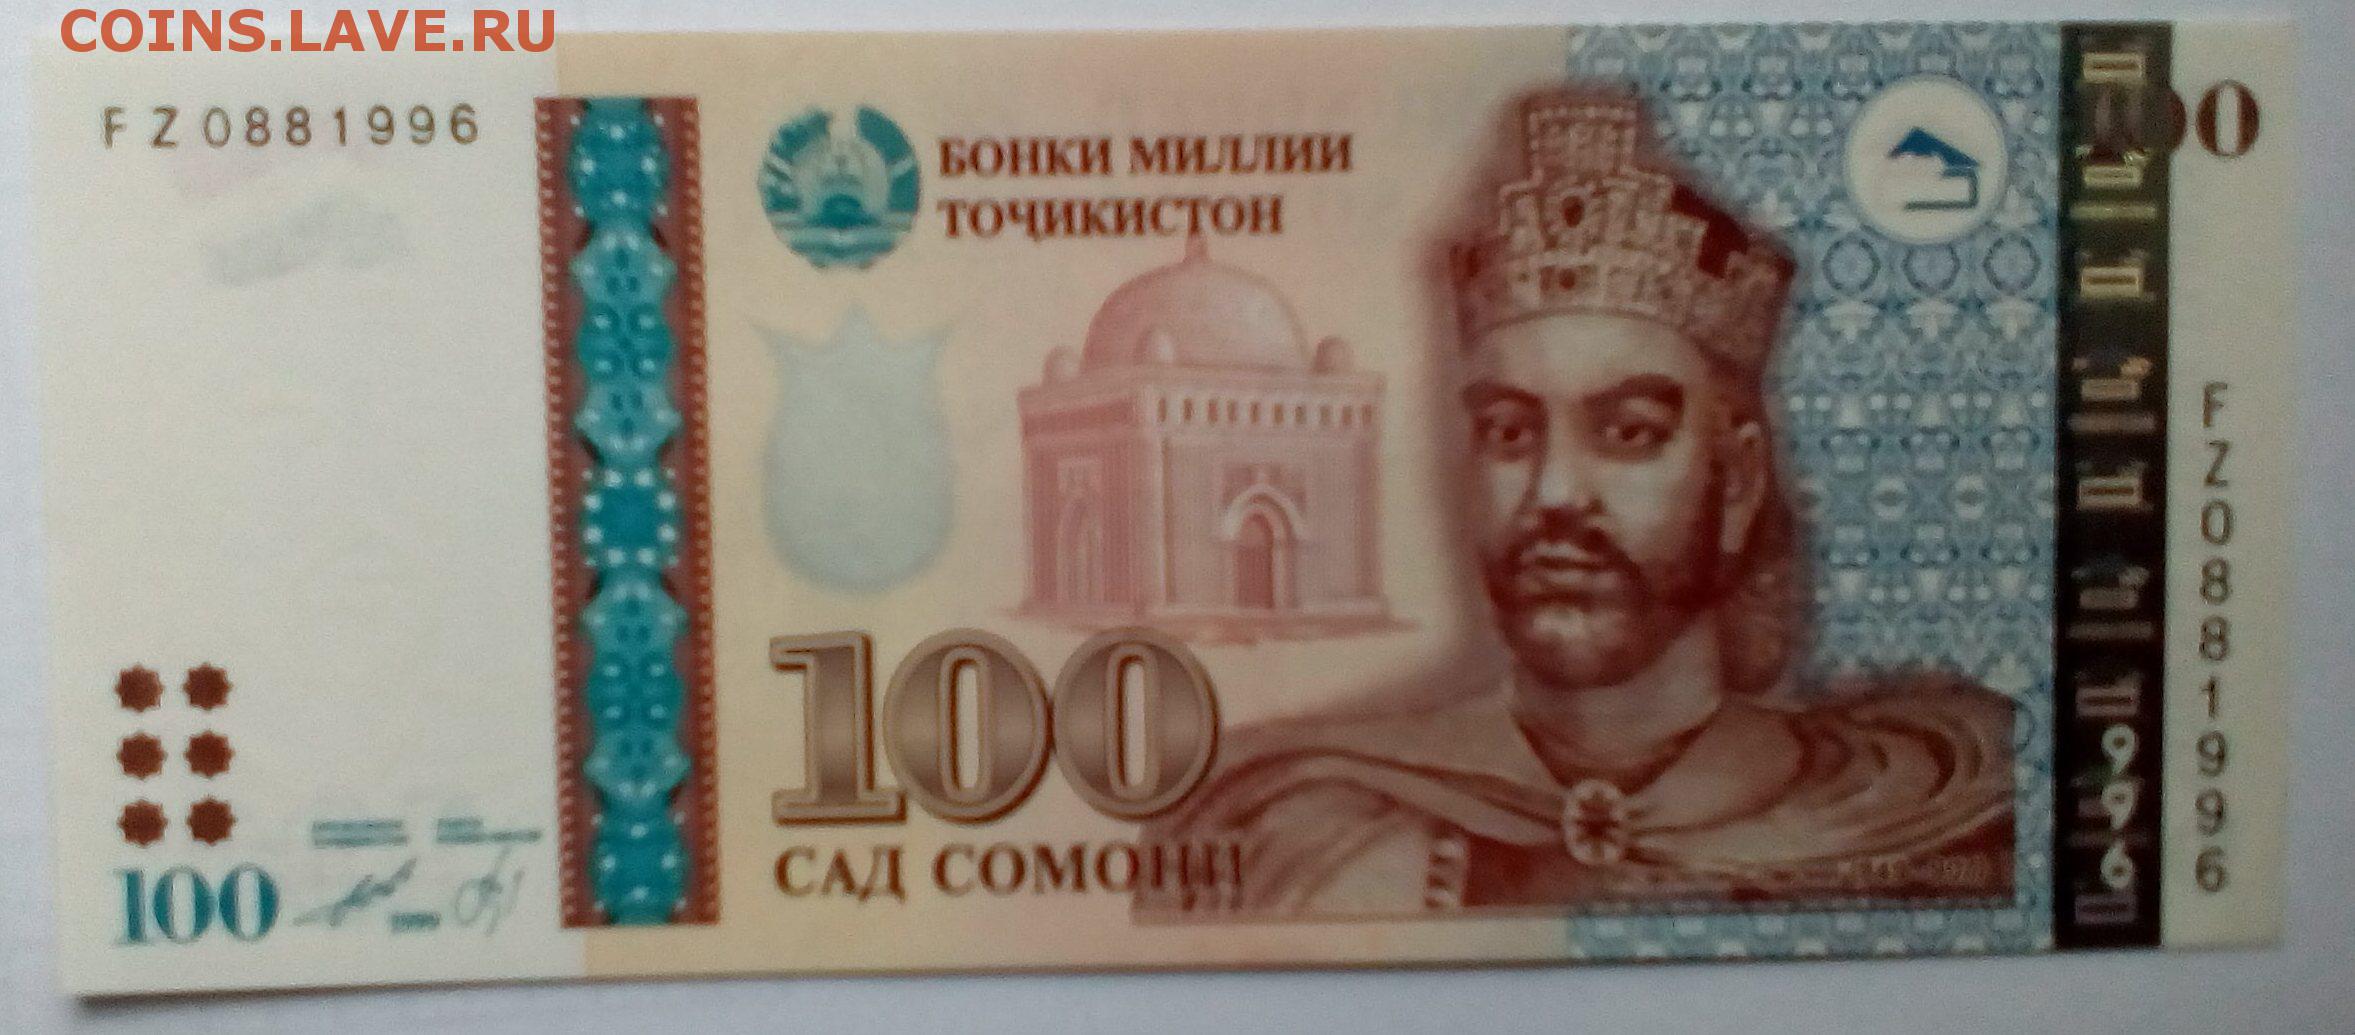 Сомони к суму. Купюра 100 Сомони. Купюры Таджикистана. Таджикский Сомони. Деньги Сомони.